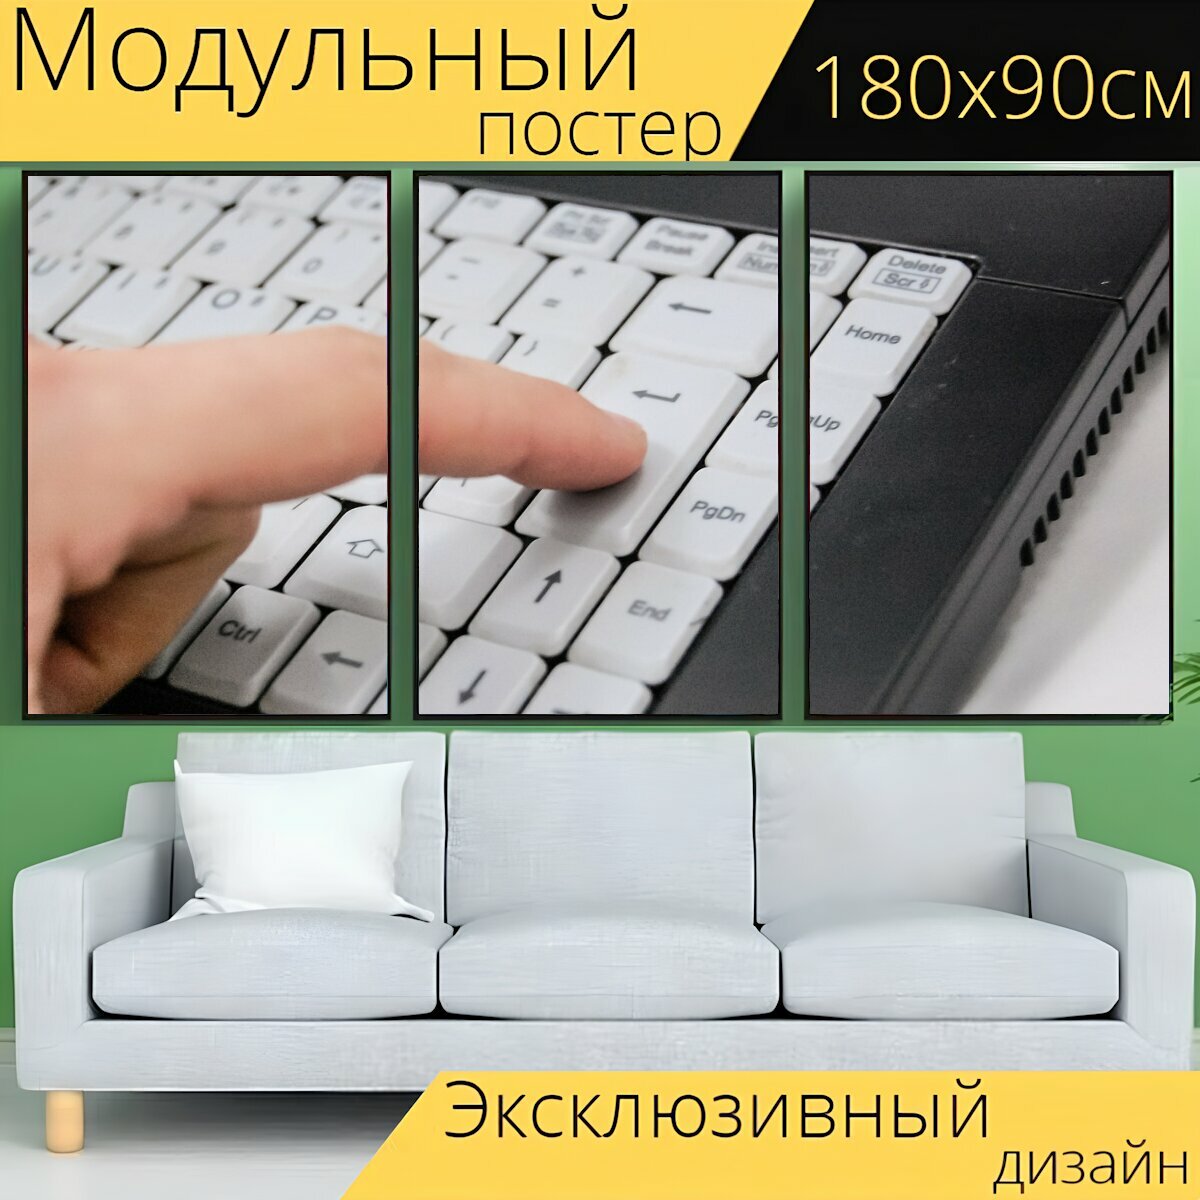 Модульный постер "Клавиатура, ноутбук, компьютер" 180 x 90 см. для интерьера